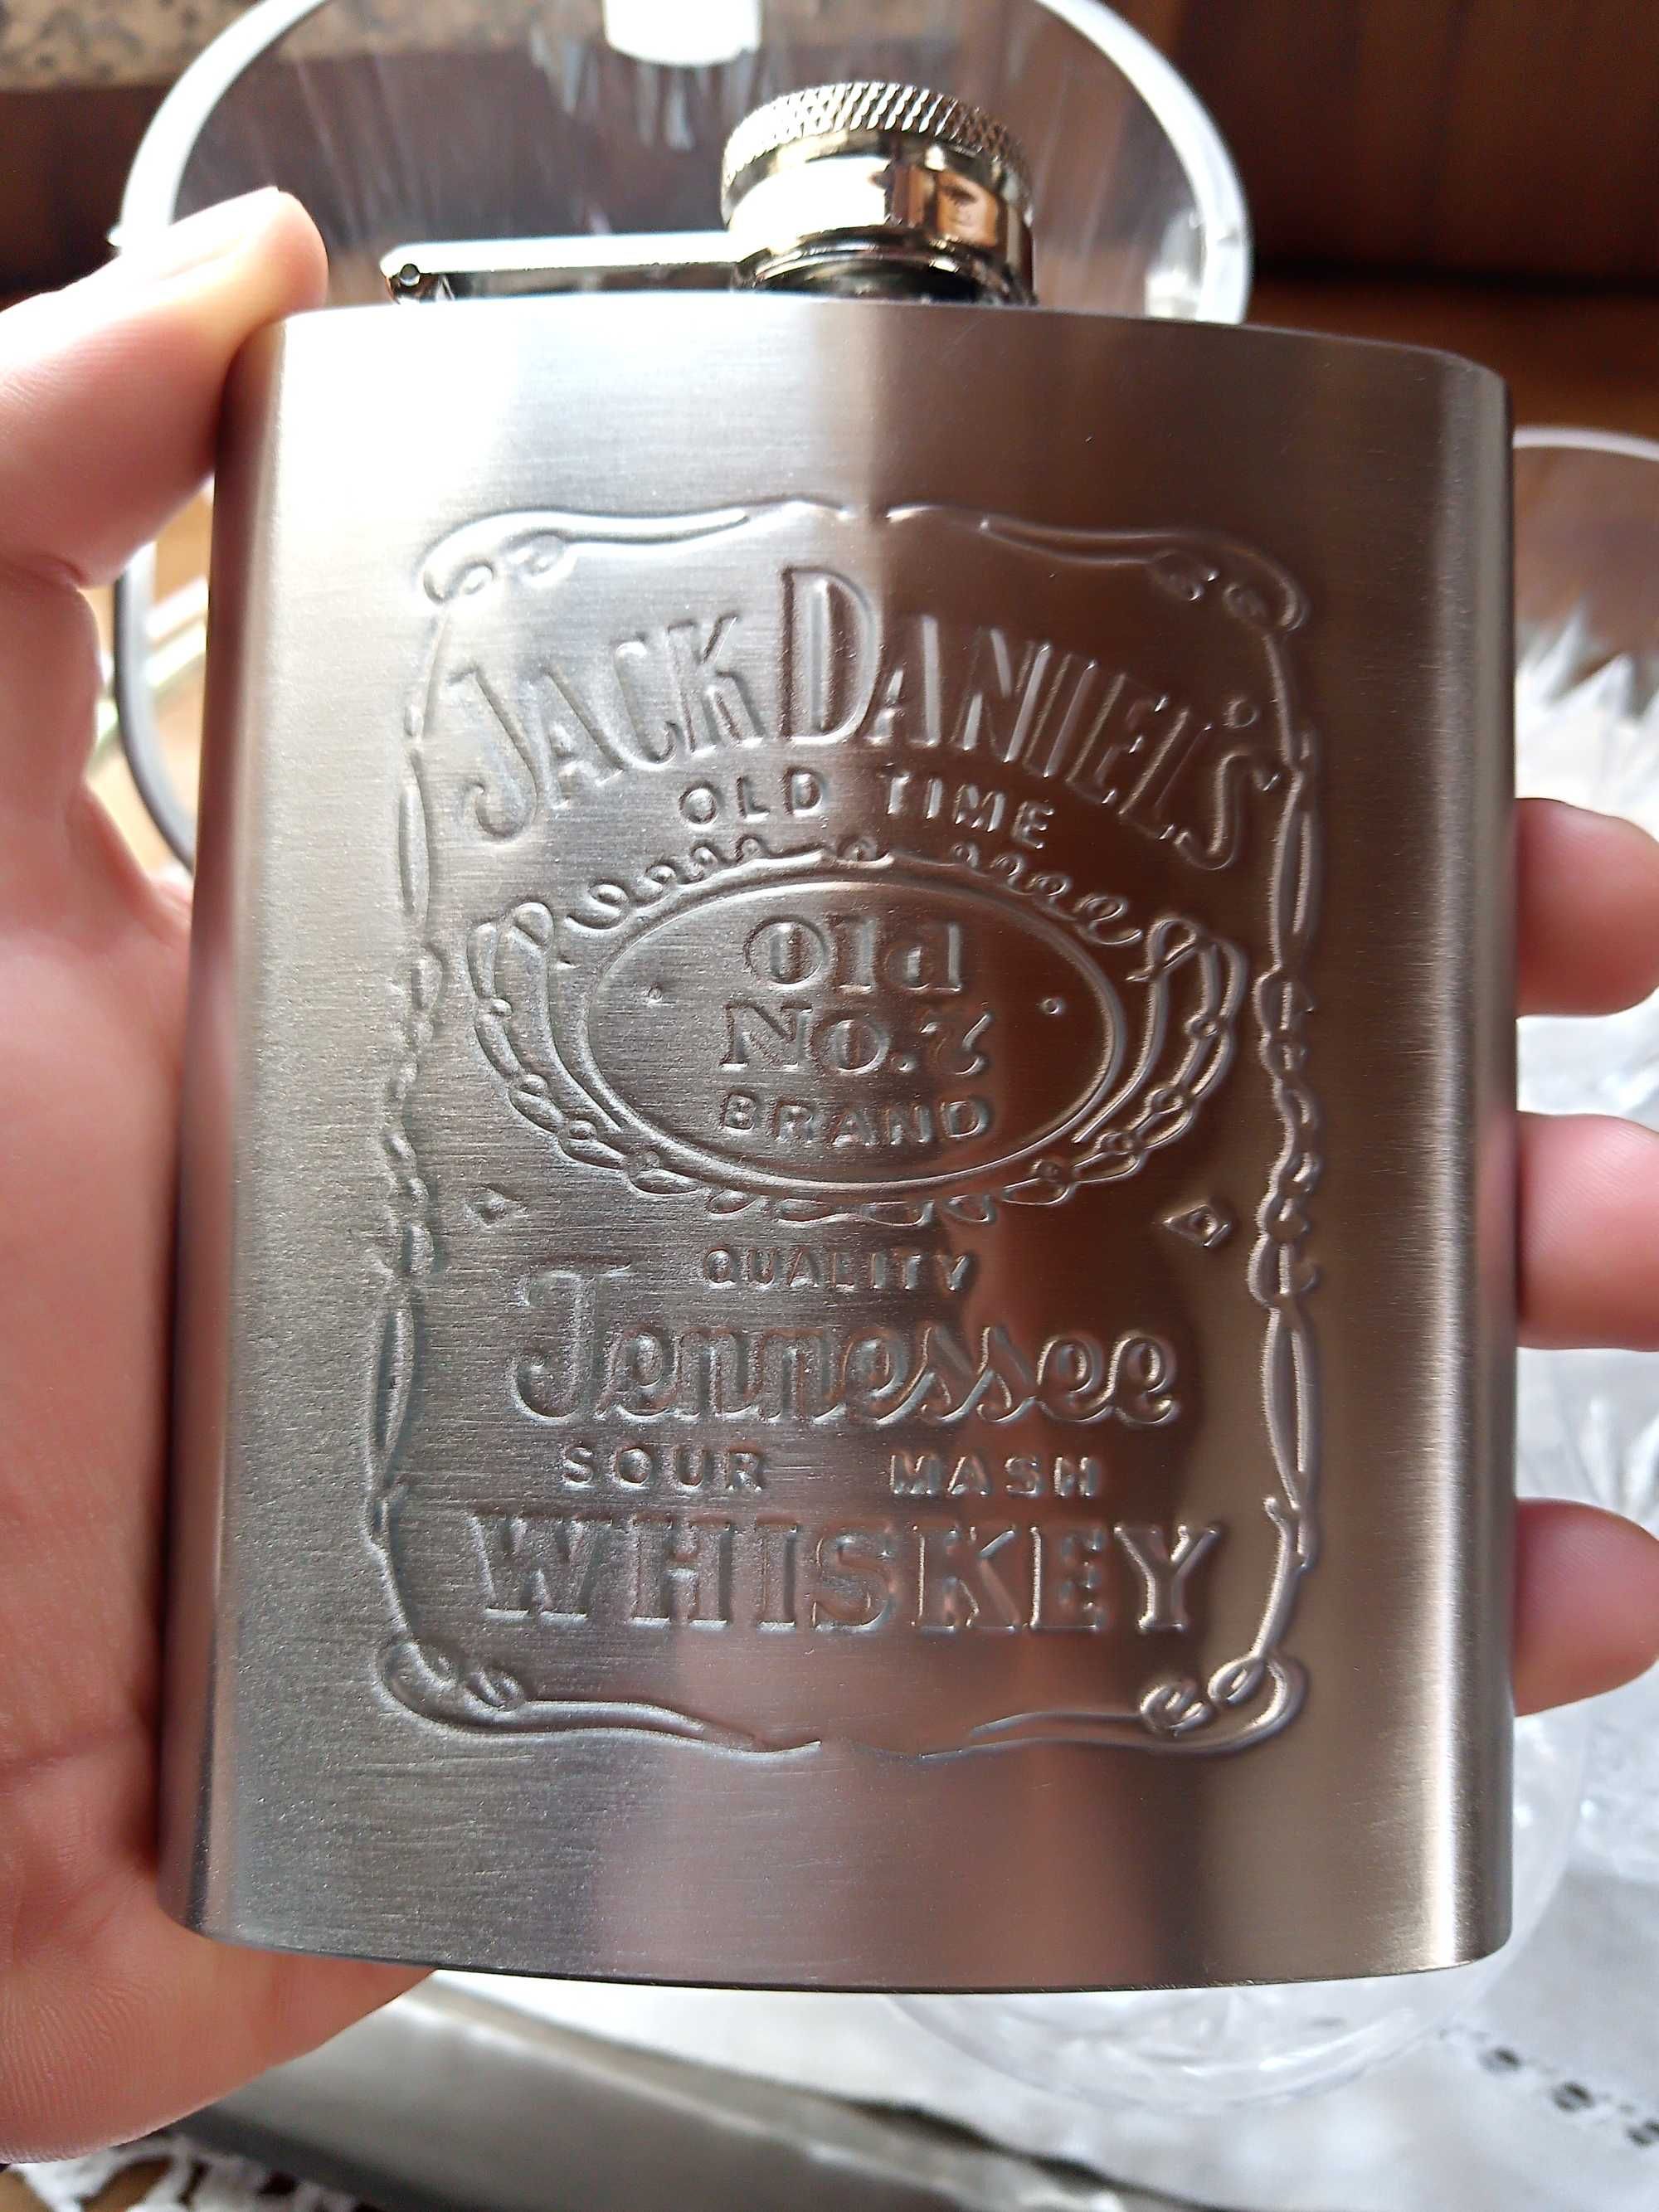 Cantil de bolso Whisky Jack Daniel's para bebidas aço inoxidáve (NOVO)